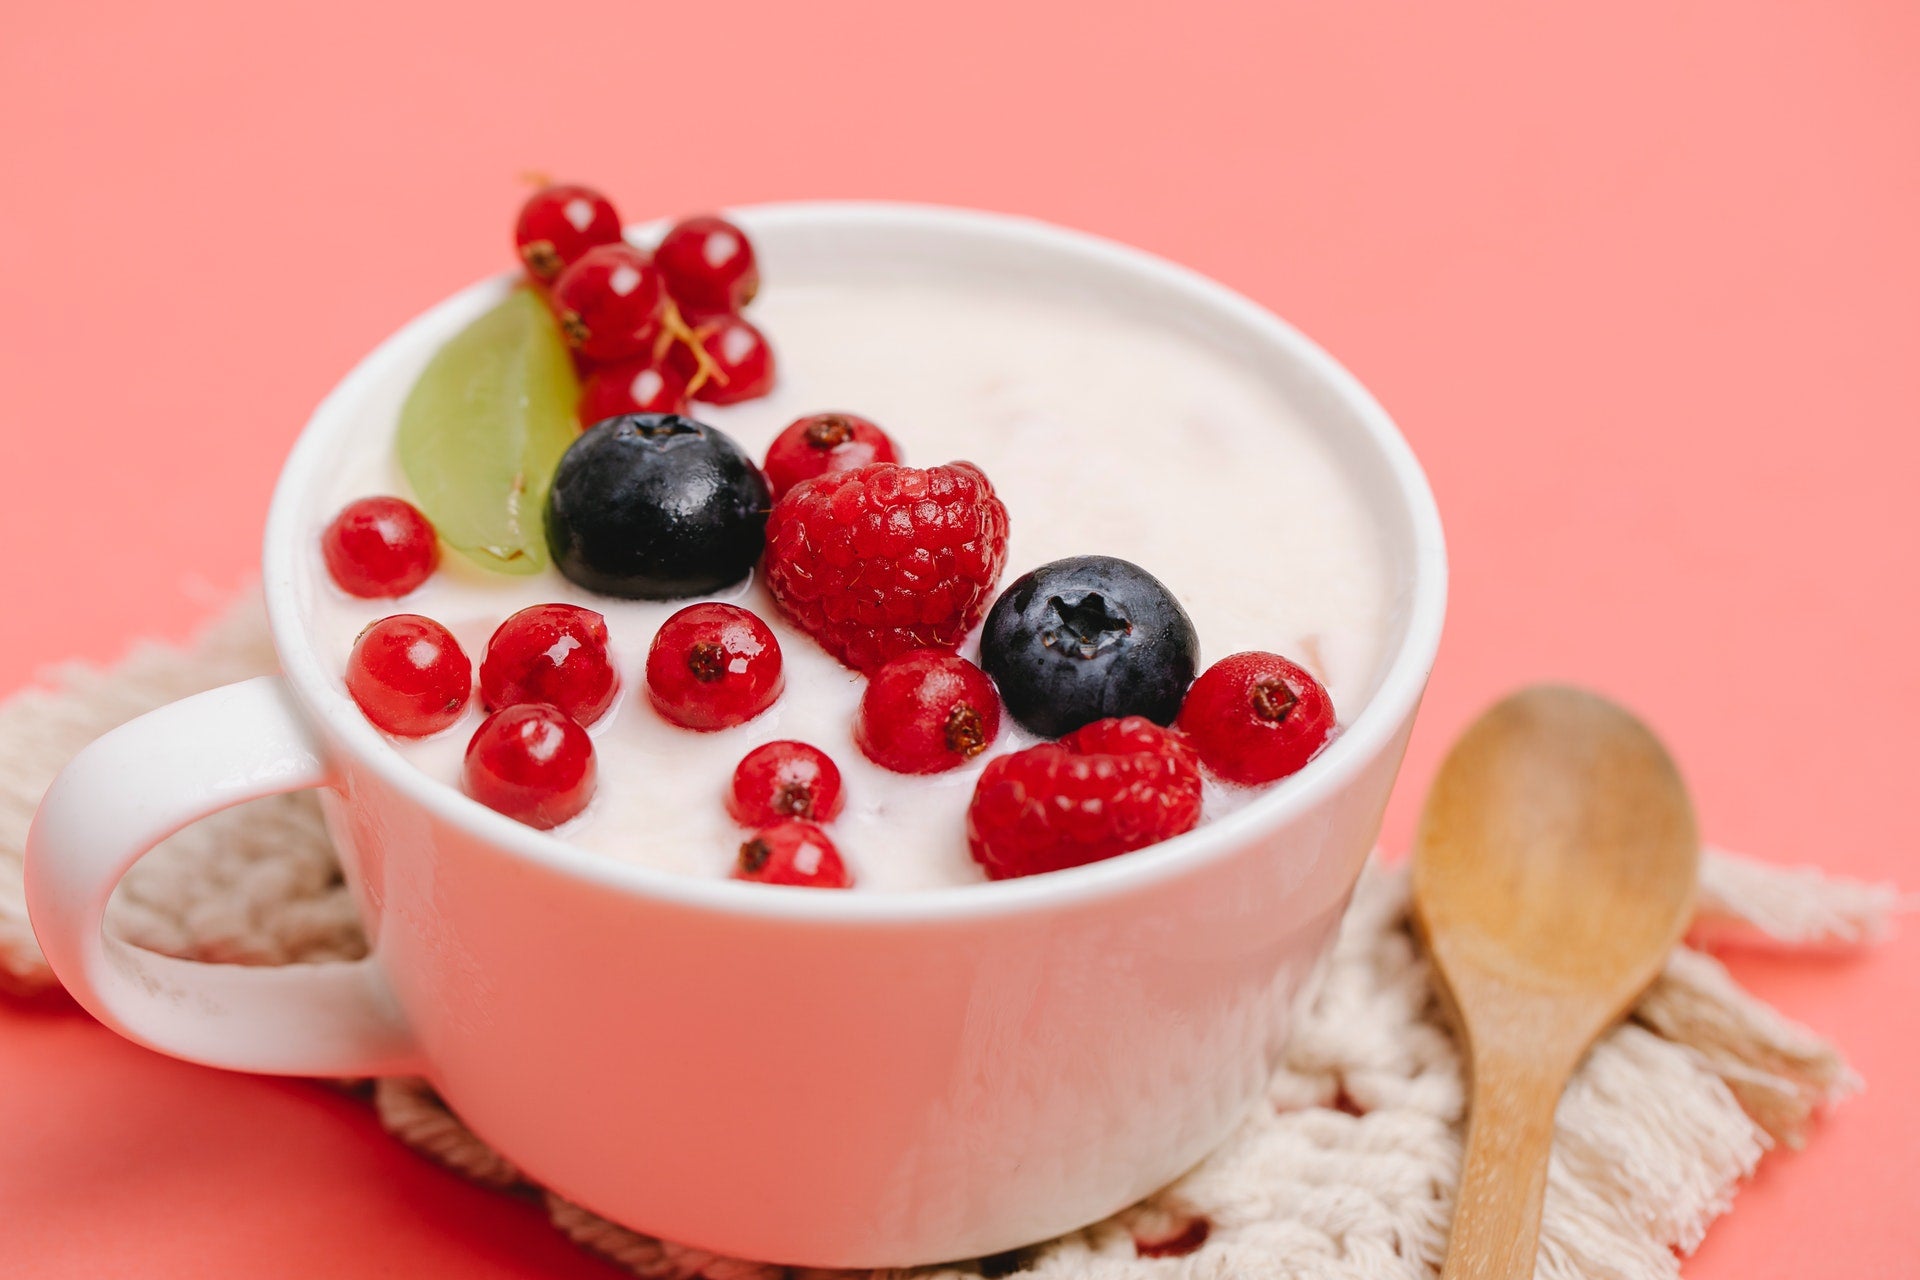 Does Keto-Friendly Yogurt Exist?